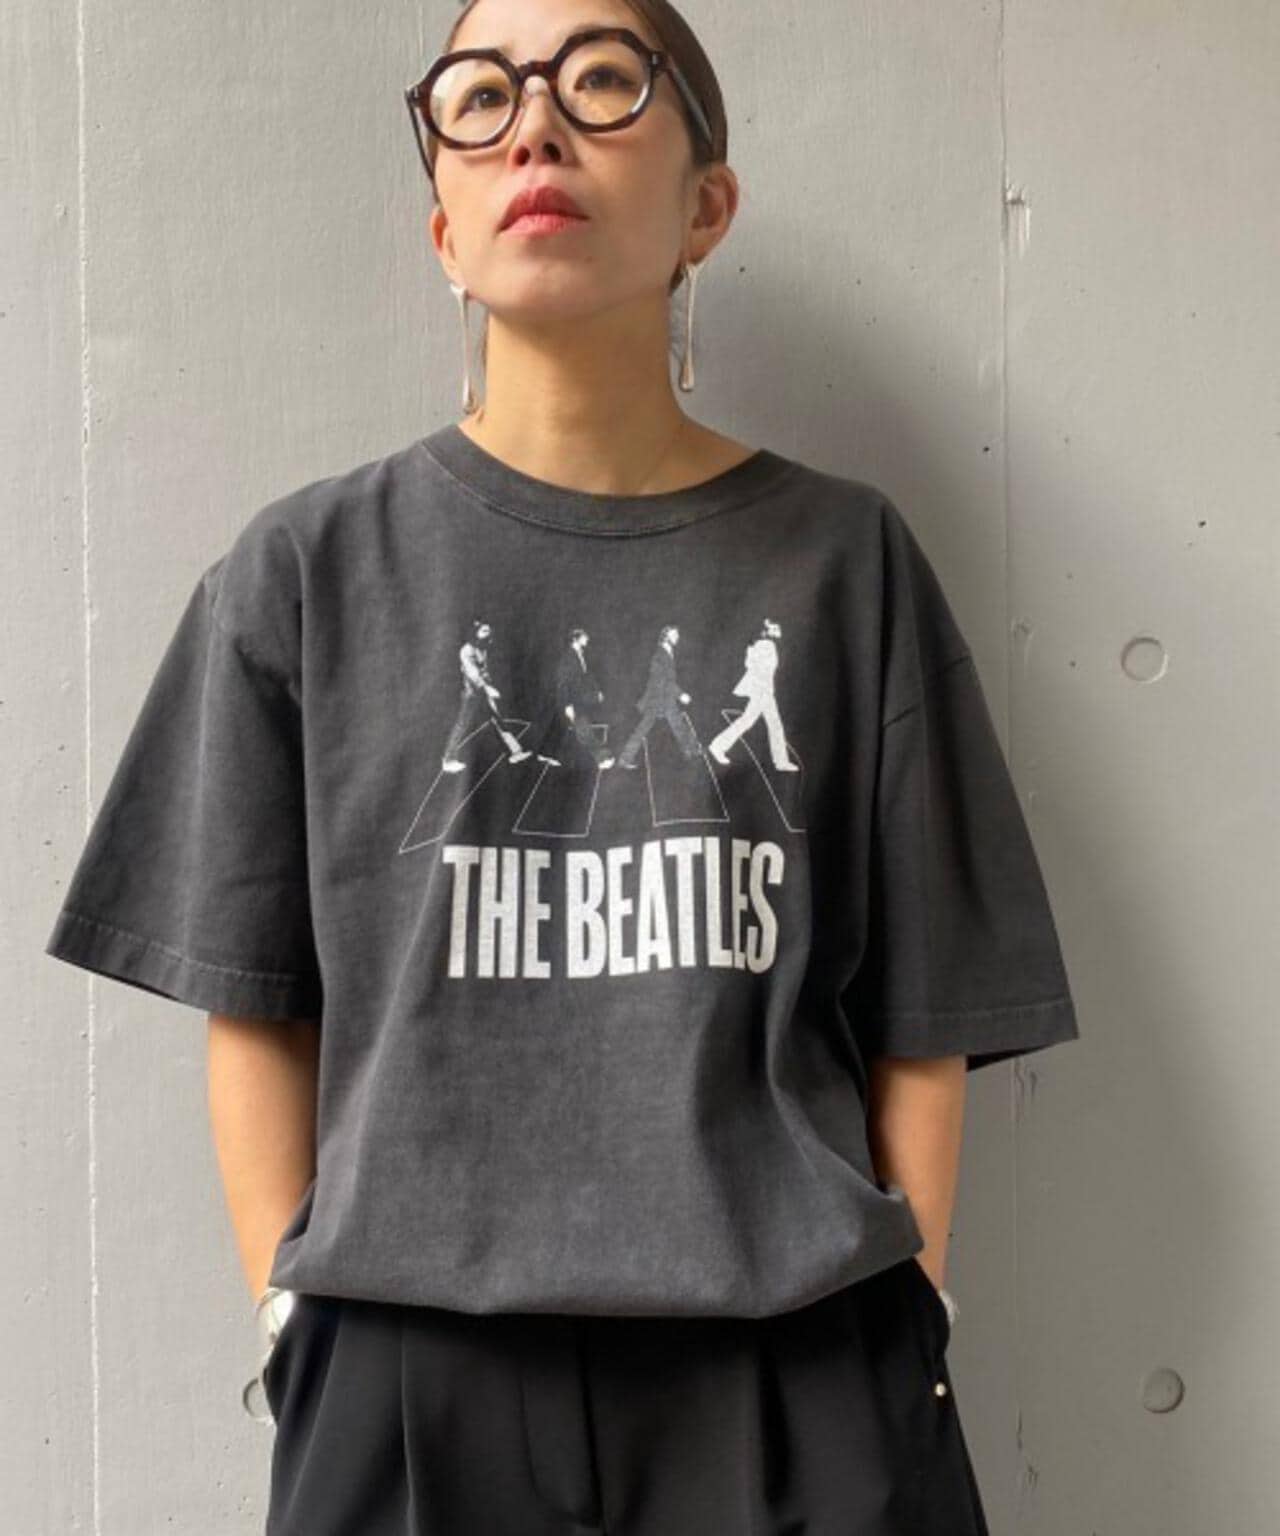 購入先柏の古着屋BeatlesのTシャツ